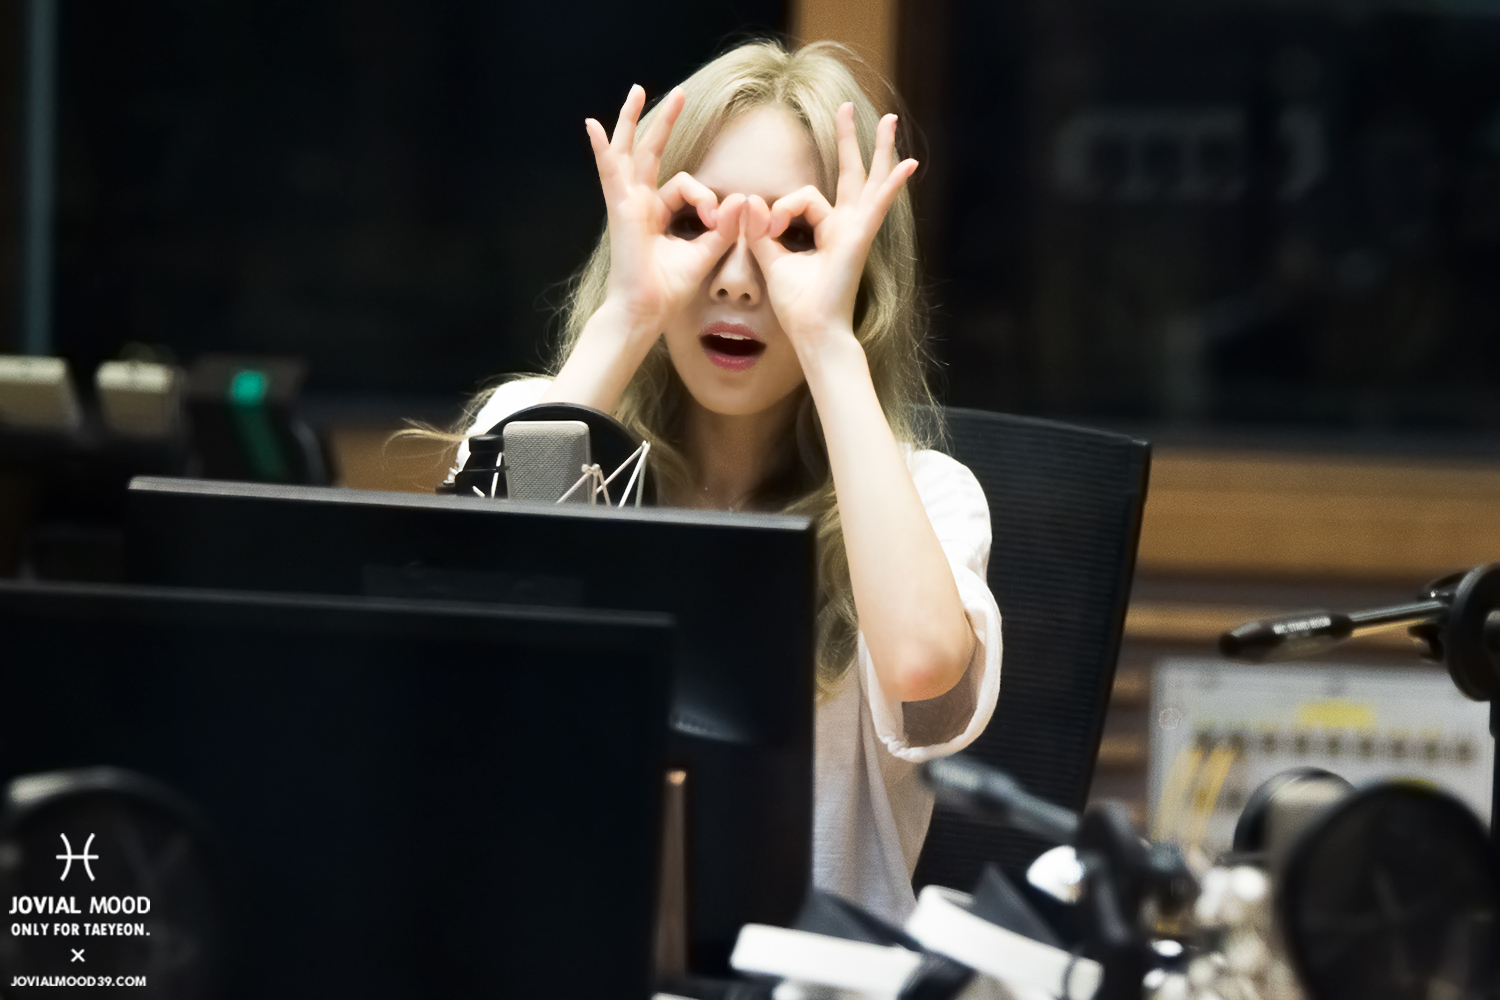 [OTHER][06-02-2015]Hình ảnh mới nhất từ DJ Sunny tại Radio MBC FM4U - "FM Date" - Page 32 28645513053_f57dda11d6_o